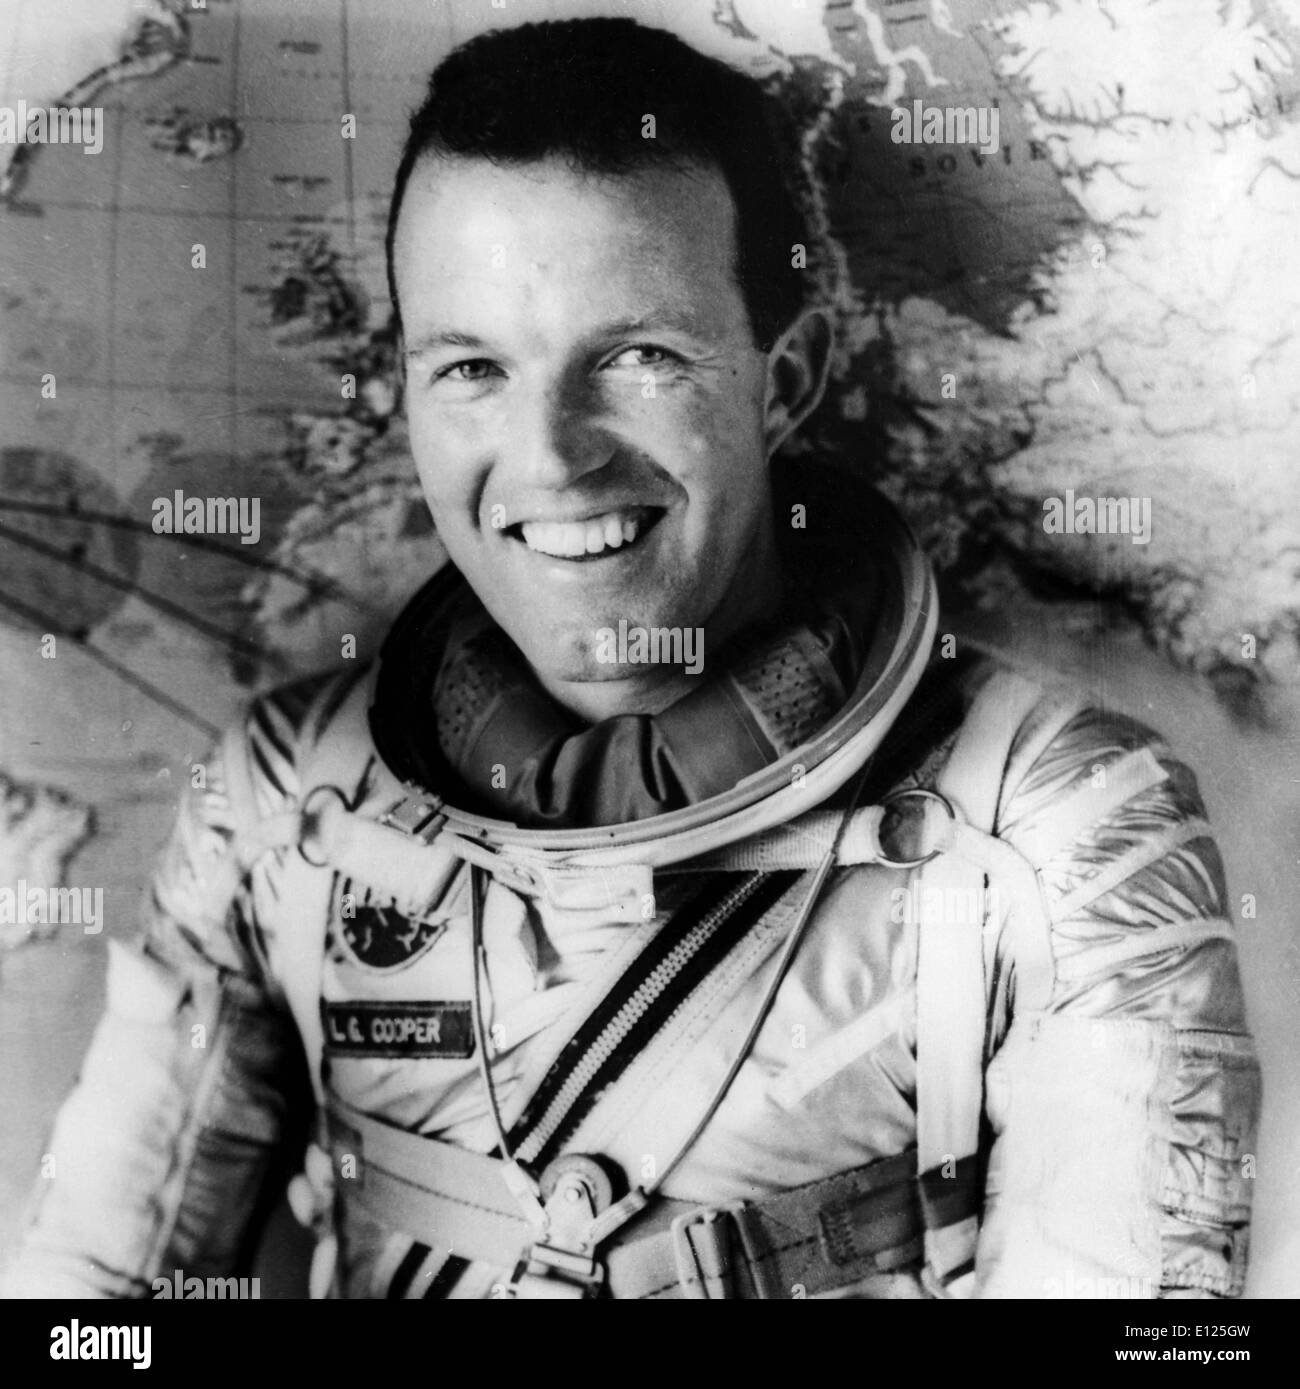 Oct 04, 2004; Cabo Cañaveral, Florida, EE.UU. (Foto de archivo: 07/26/1065) Leroy Gordon Cooper, Jr., ) un original Mercury 7 astronauta, murió el 10 de octubre de 2004 en su hogar en Ventura, California tenía 77 años de edad. Cooper piloteado el sexto y último vuelo del programa Mercury y posteriormente ordenó Gemini V. Foto: astronauta norteamericano LT. El Coronel Gordon Cooper, será en el géminis V nave espacial, que estará en órbita durante ocho días . LT. COOPER ha hecho ya veintidós órbitas en su propio. (Crédito de la imagen: imágenes de KEYSTONE USA/ZUMAPRESS.com) Foto de stock